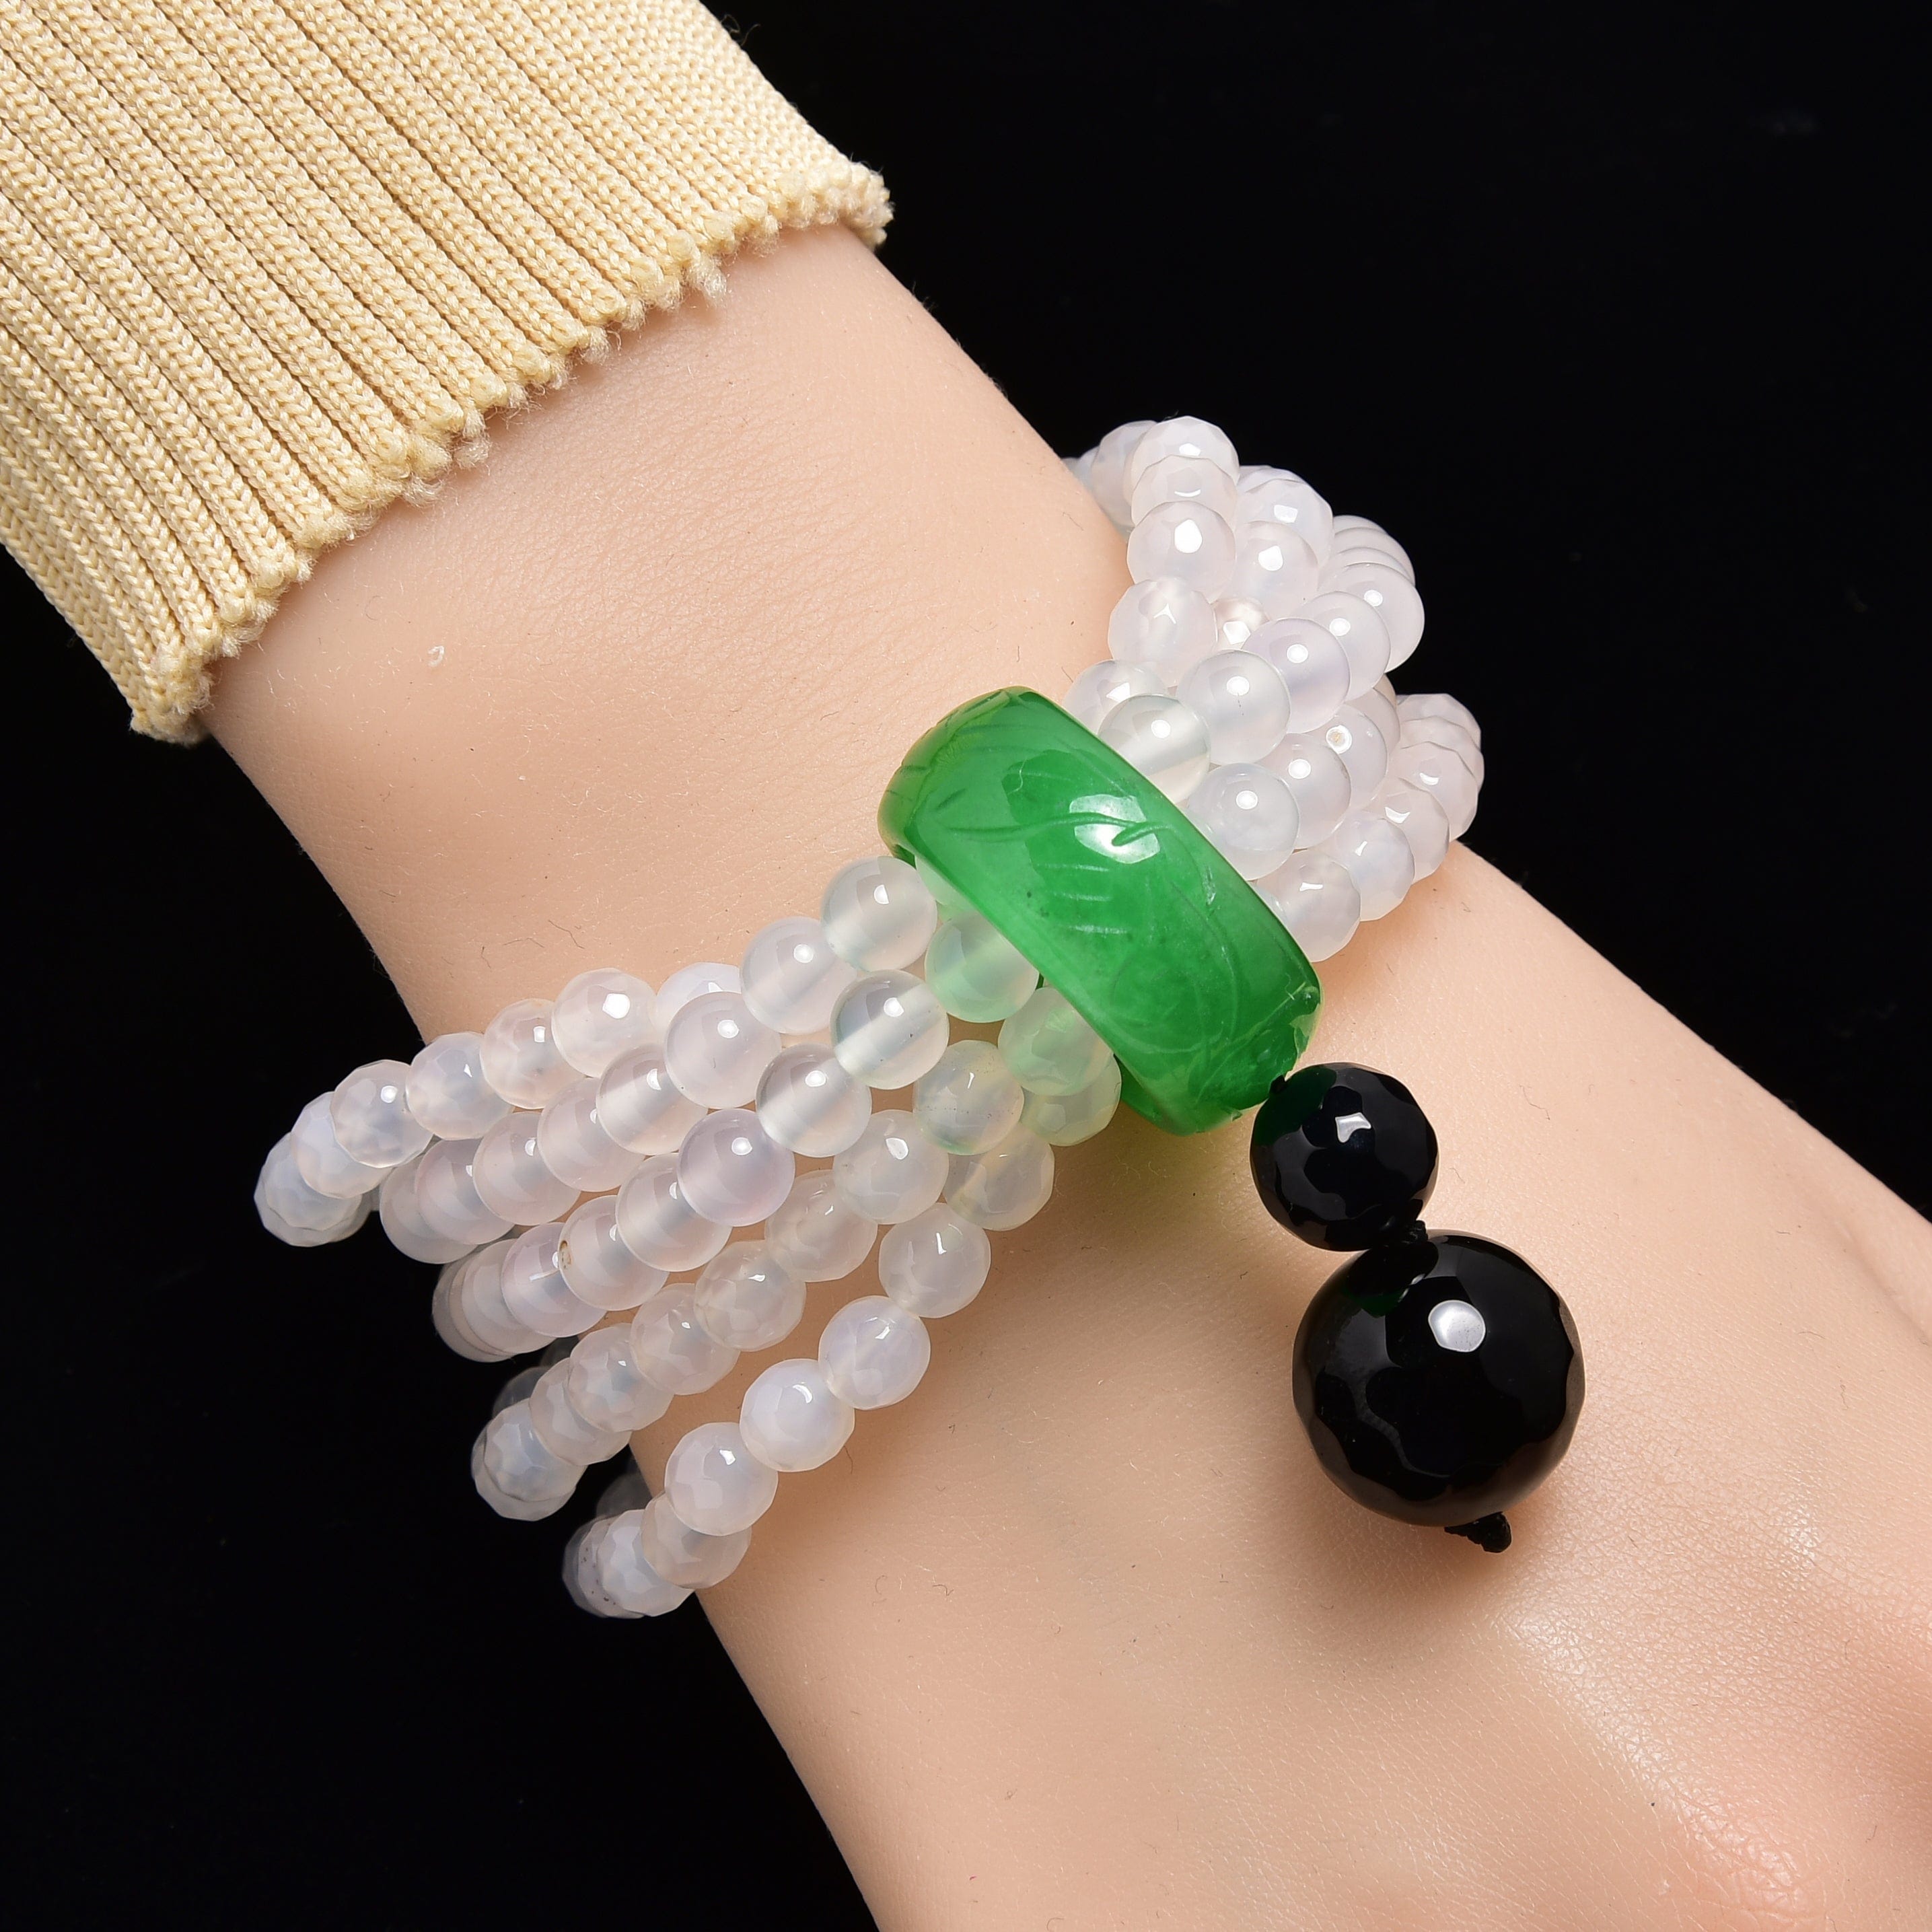 Kalifano Gemstone Bracelets Quartz Agate 6mm Beads with Jade Ring Gemstone Elastic Bracelet PLAT-BGP-JRQZ